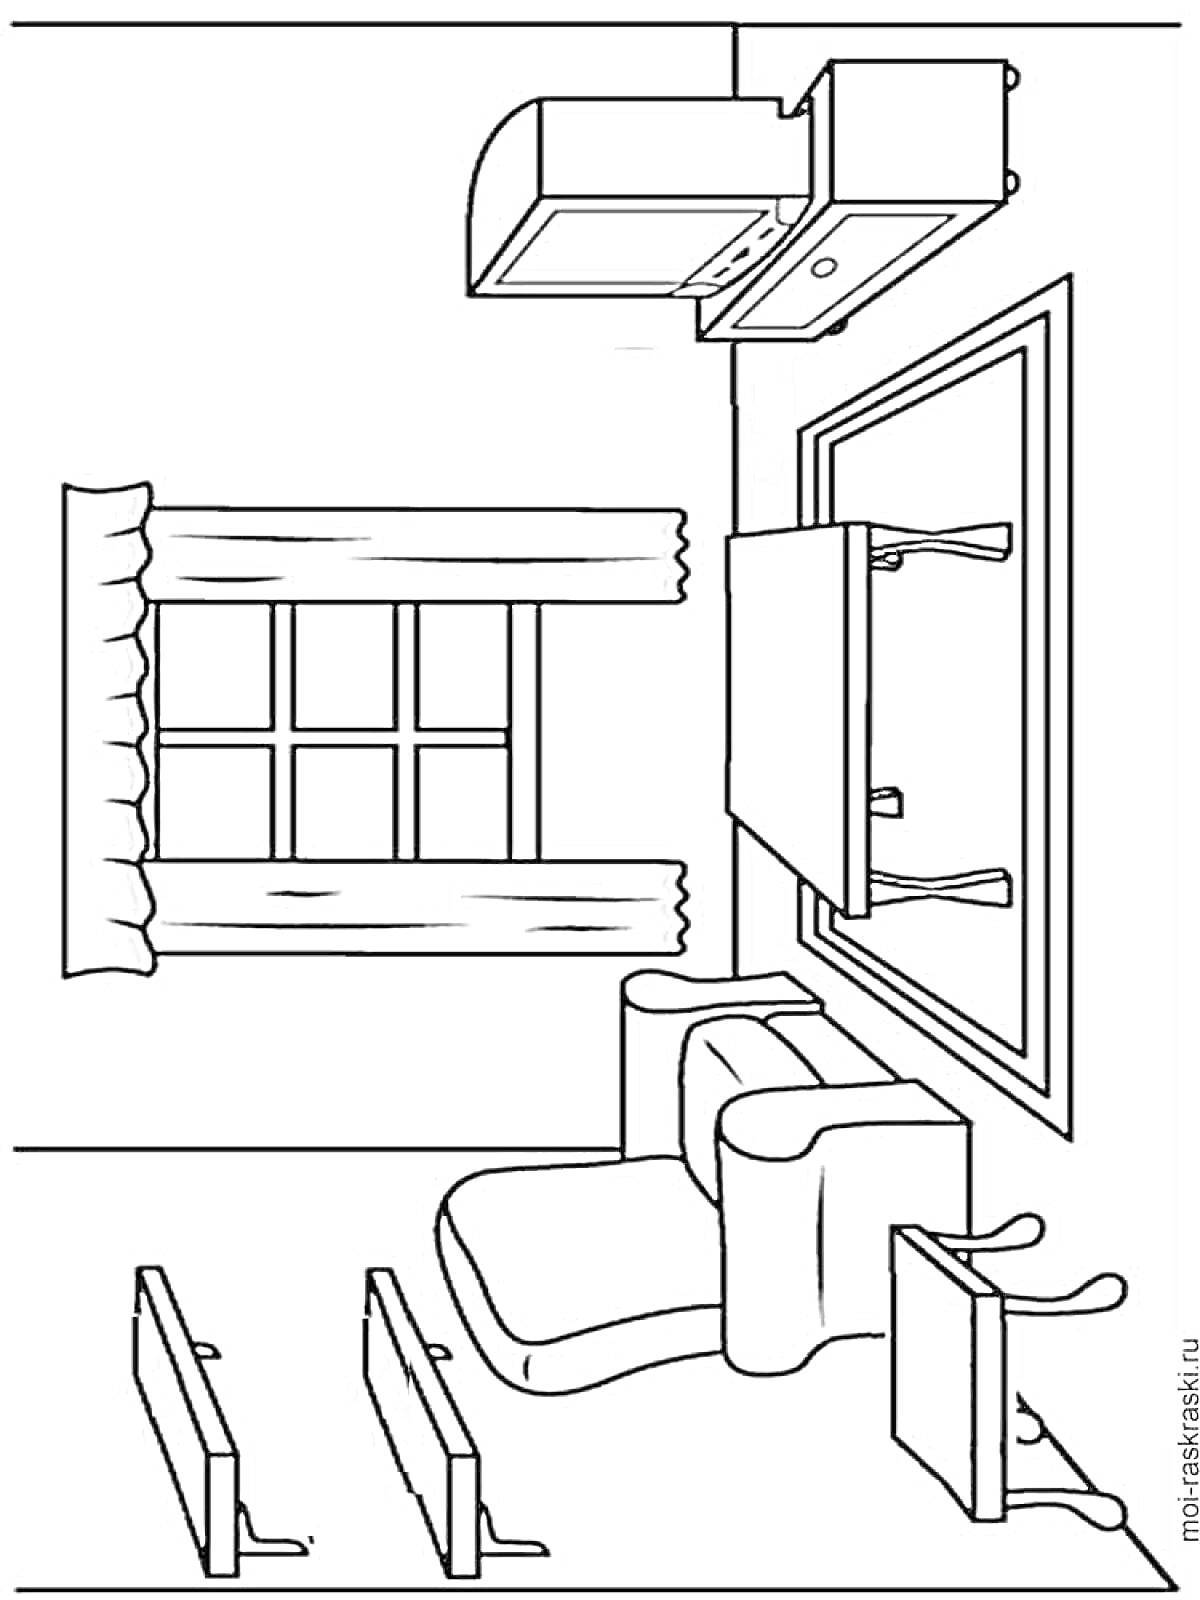 Раскраска Комната с мебелью: окно с занавесками, кресло, стол с ковром, тумба с телевизором, две книжные полки